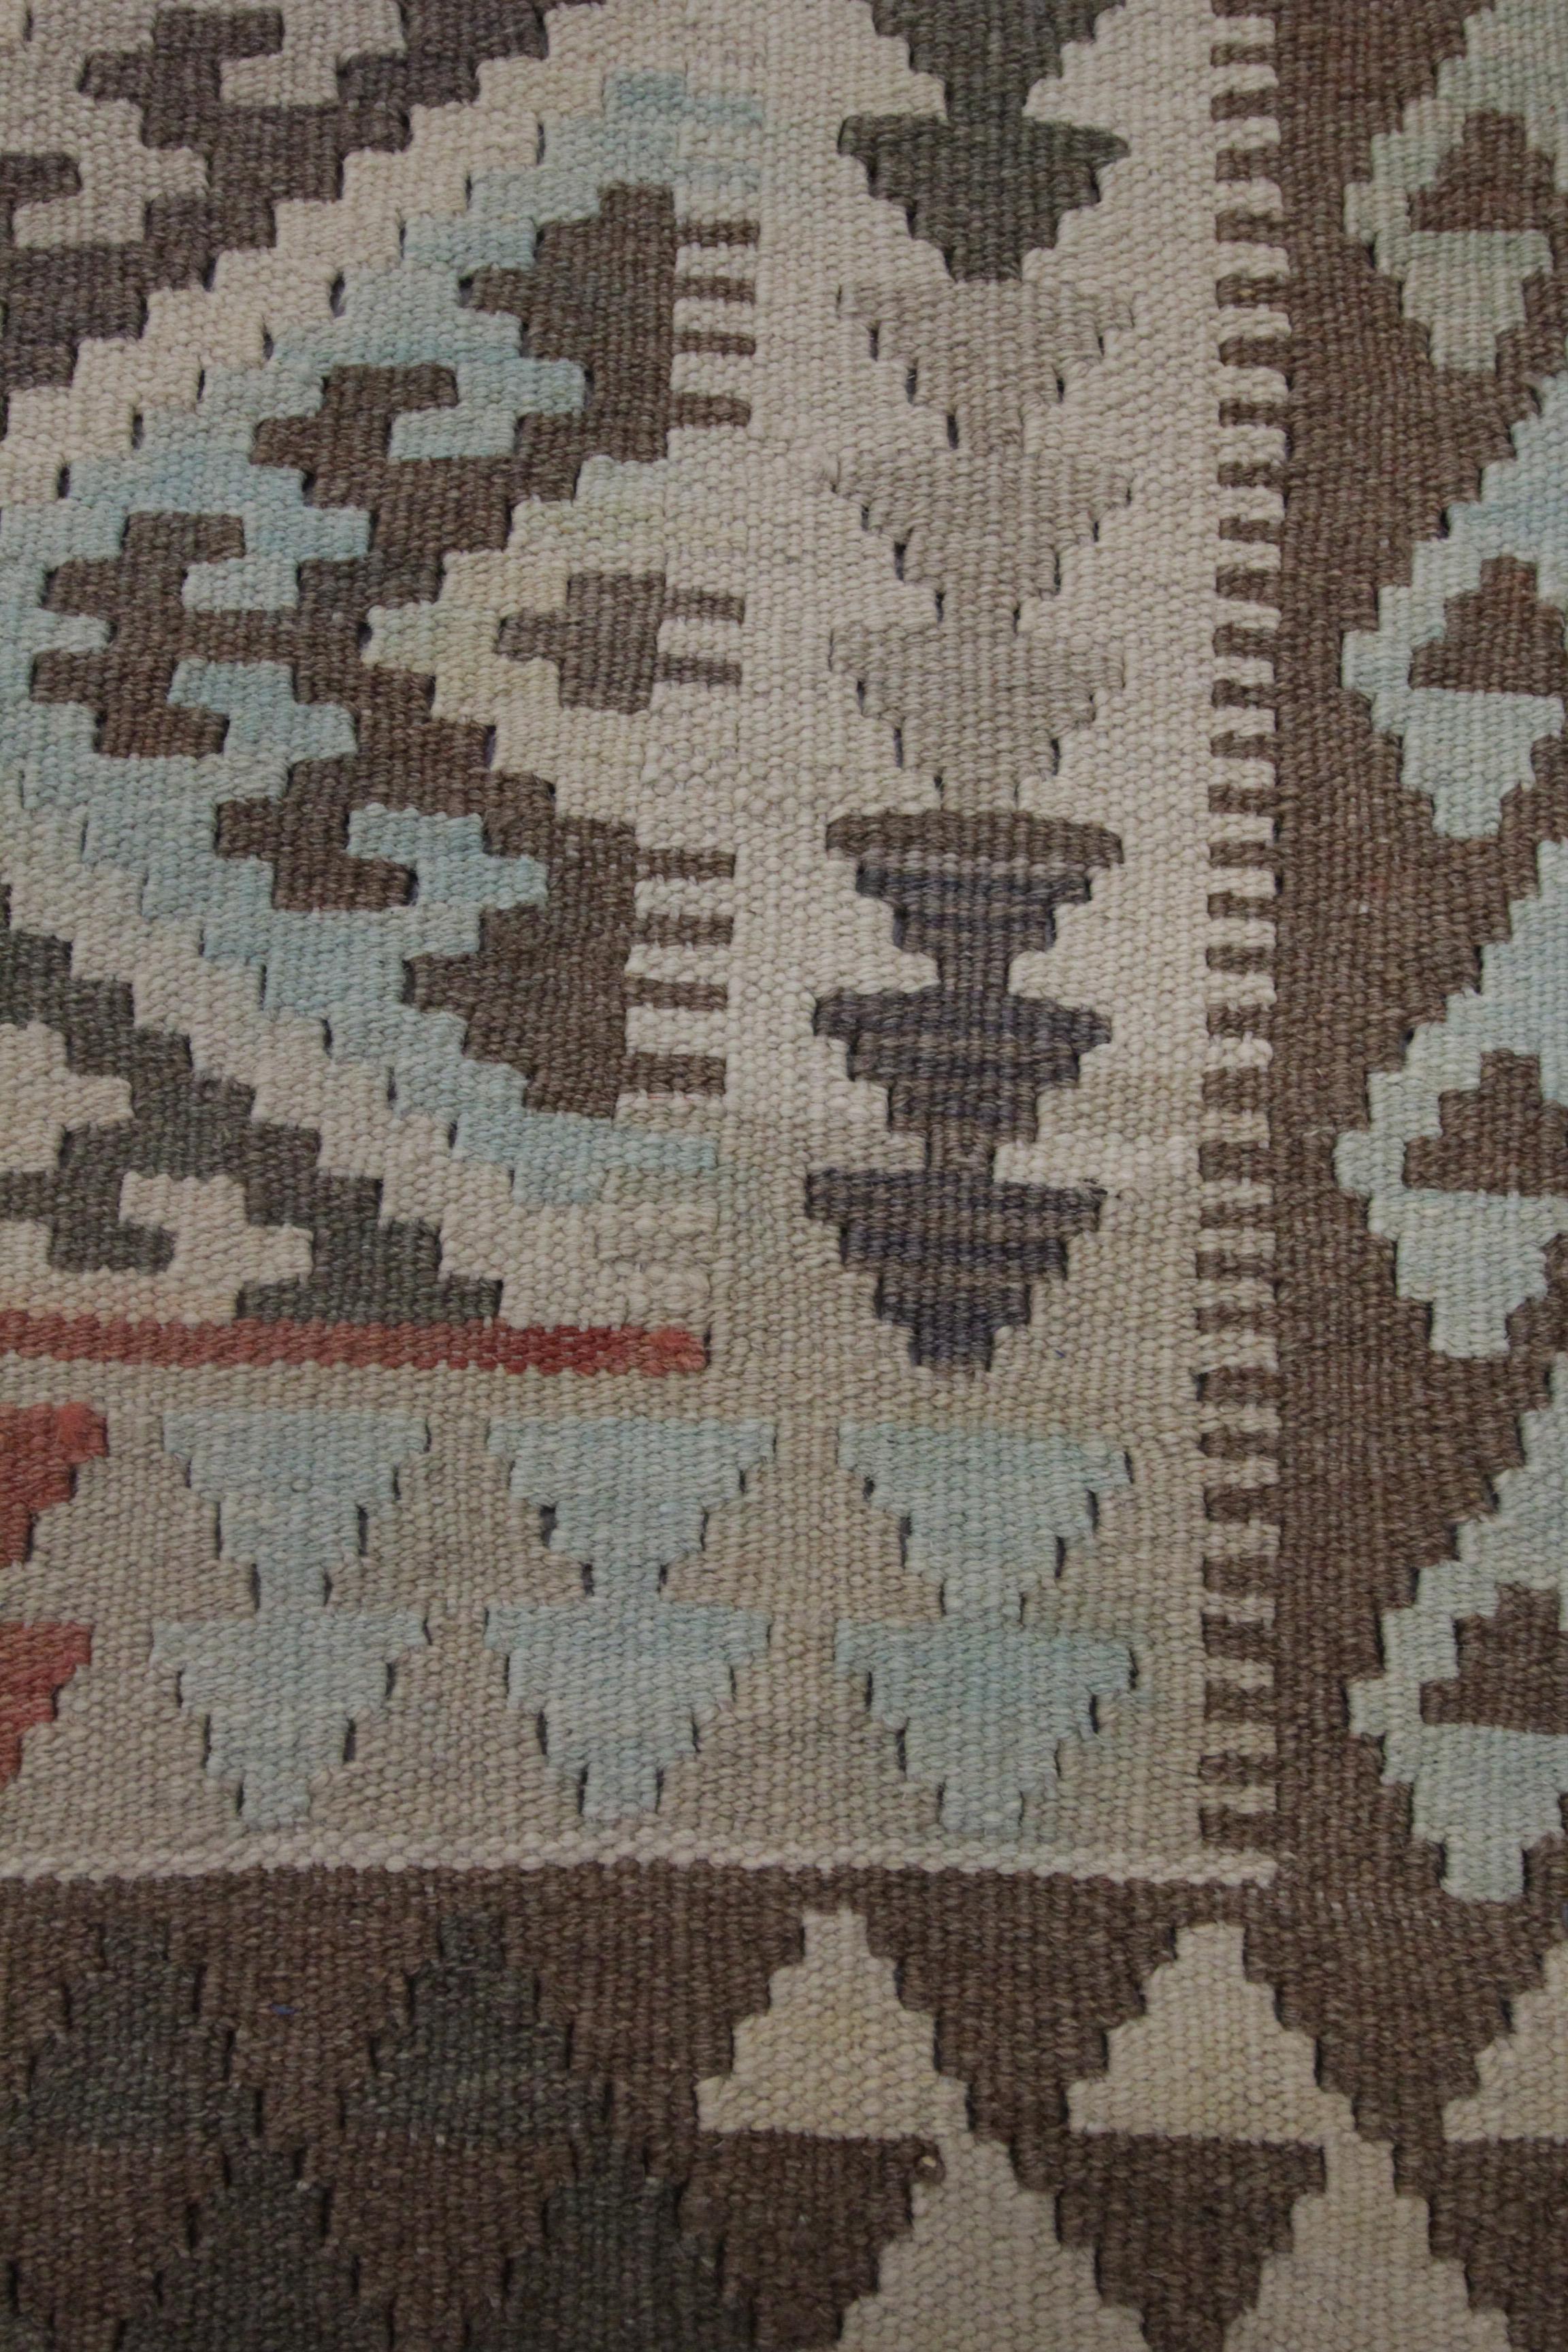 Dieser kühne traditionelle Kilim-Teppich aus Wolle ist ein handgewebter afghanischer Kilim aus dem frühen 21. Jahrhundert, etwa 2010-15. Das Design zeigt ein sich wiederholendes Motivmuster aus Hakenmedaillons mit blauen, beigen und braunen